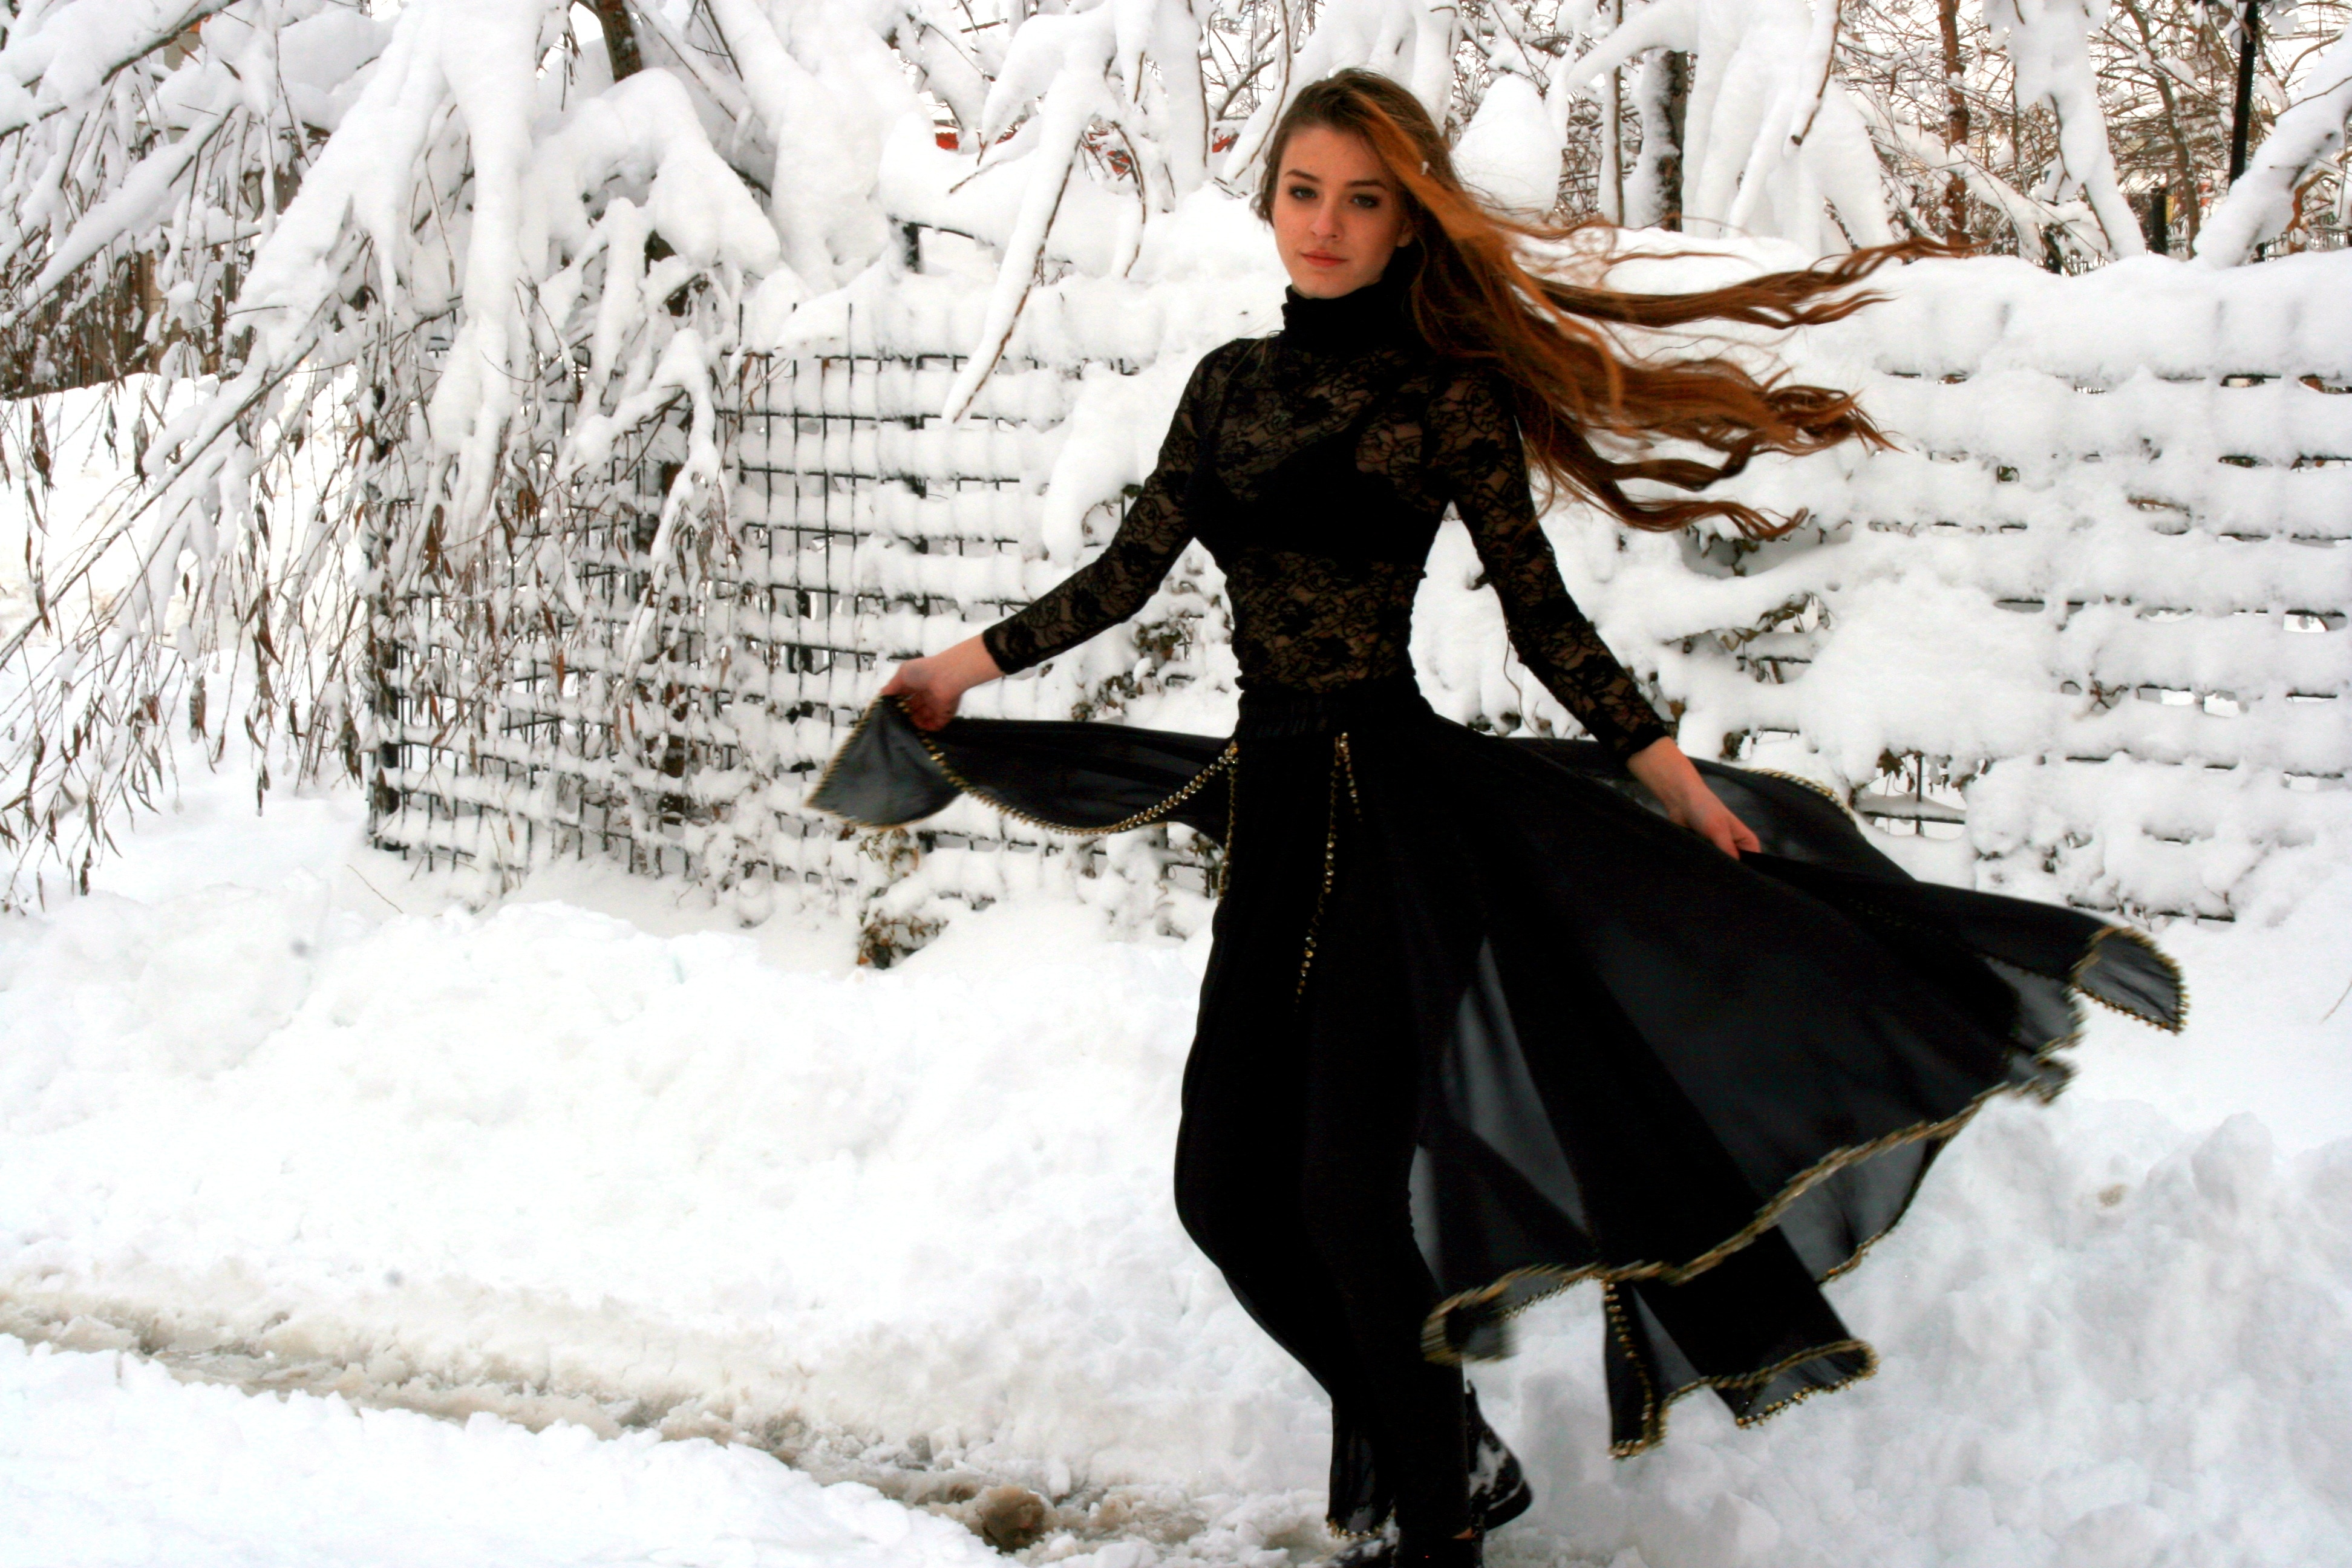 Черное платье зима